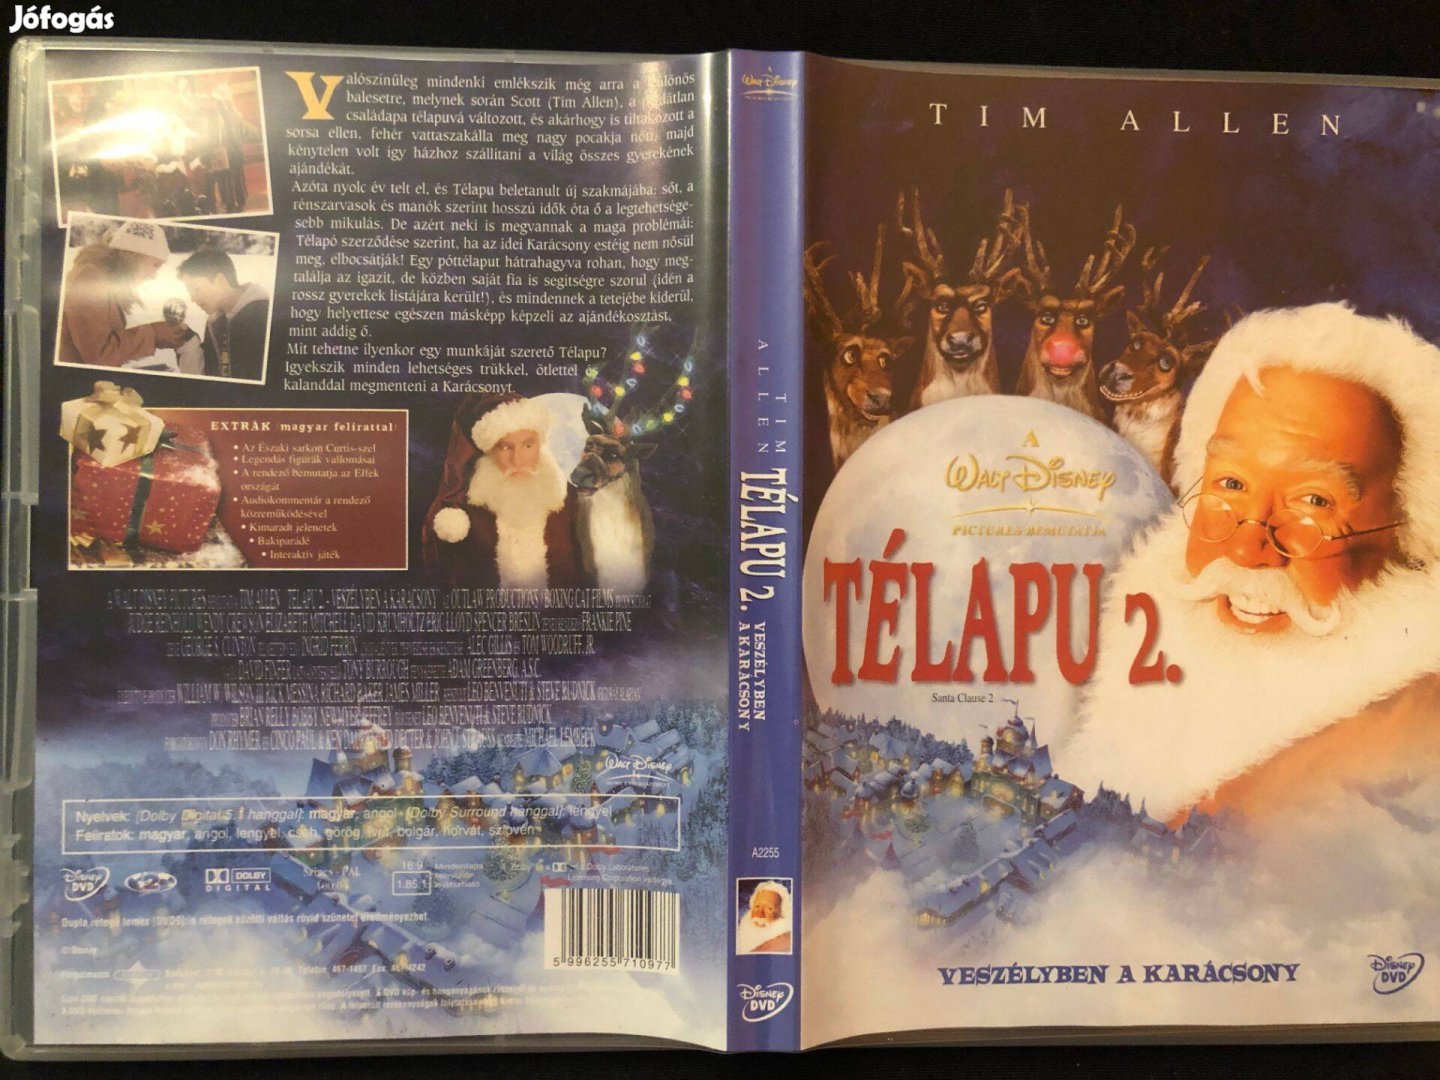 Télapu 2. DVD Veszélyben a karácsony (karcmentes, Tim Allen)